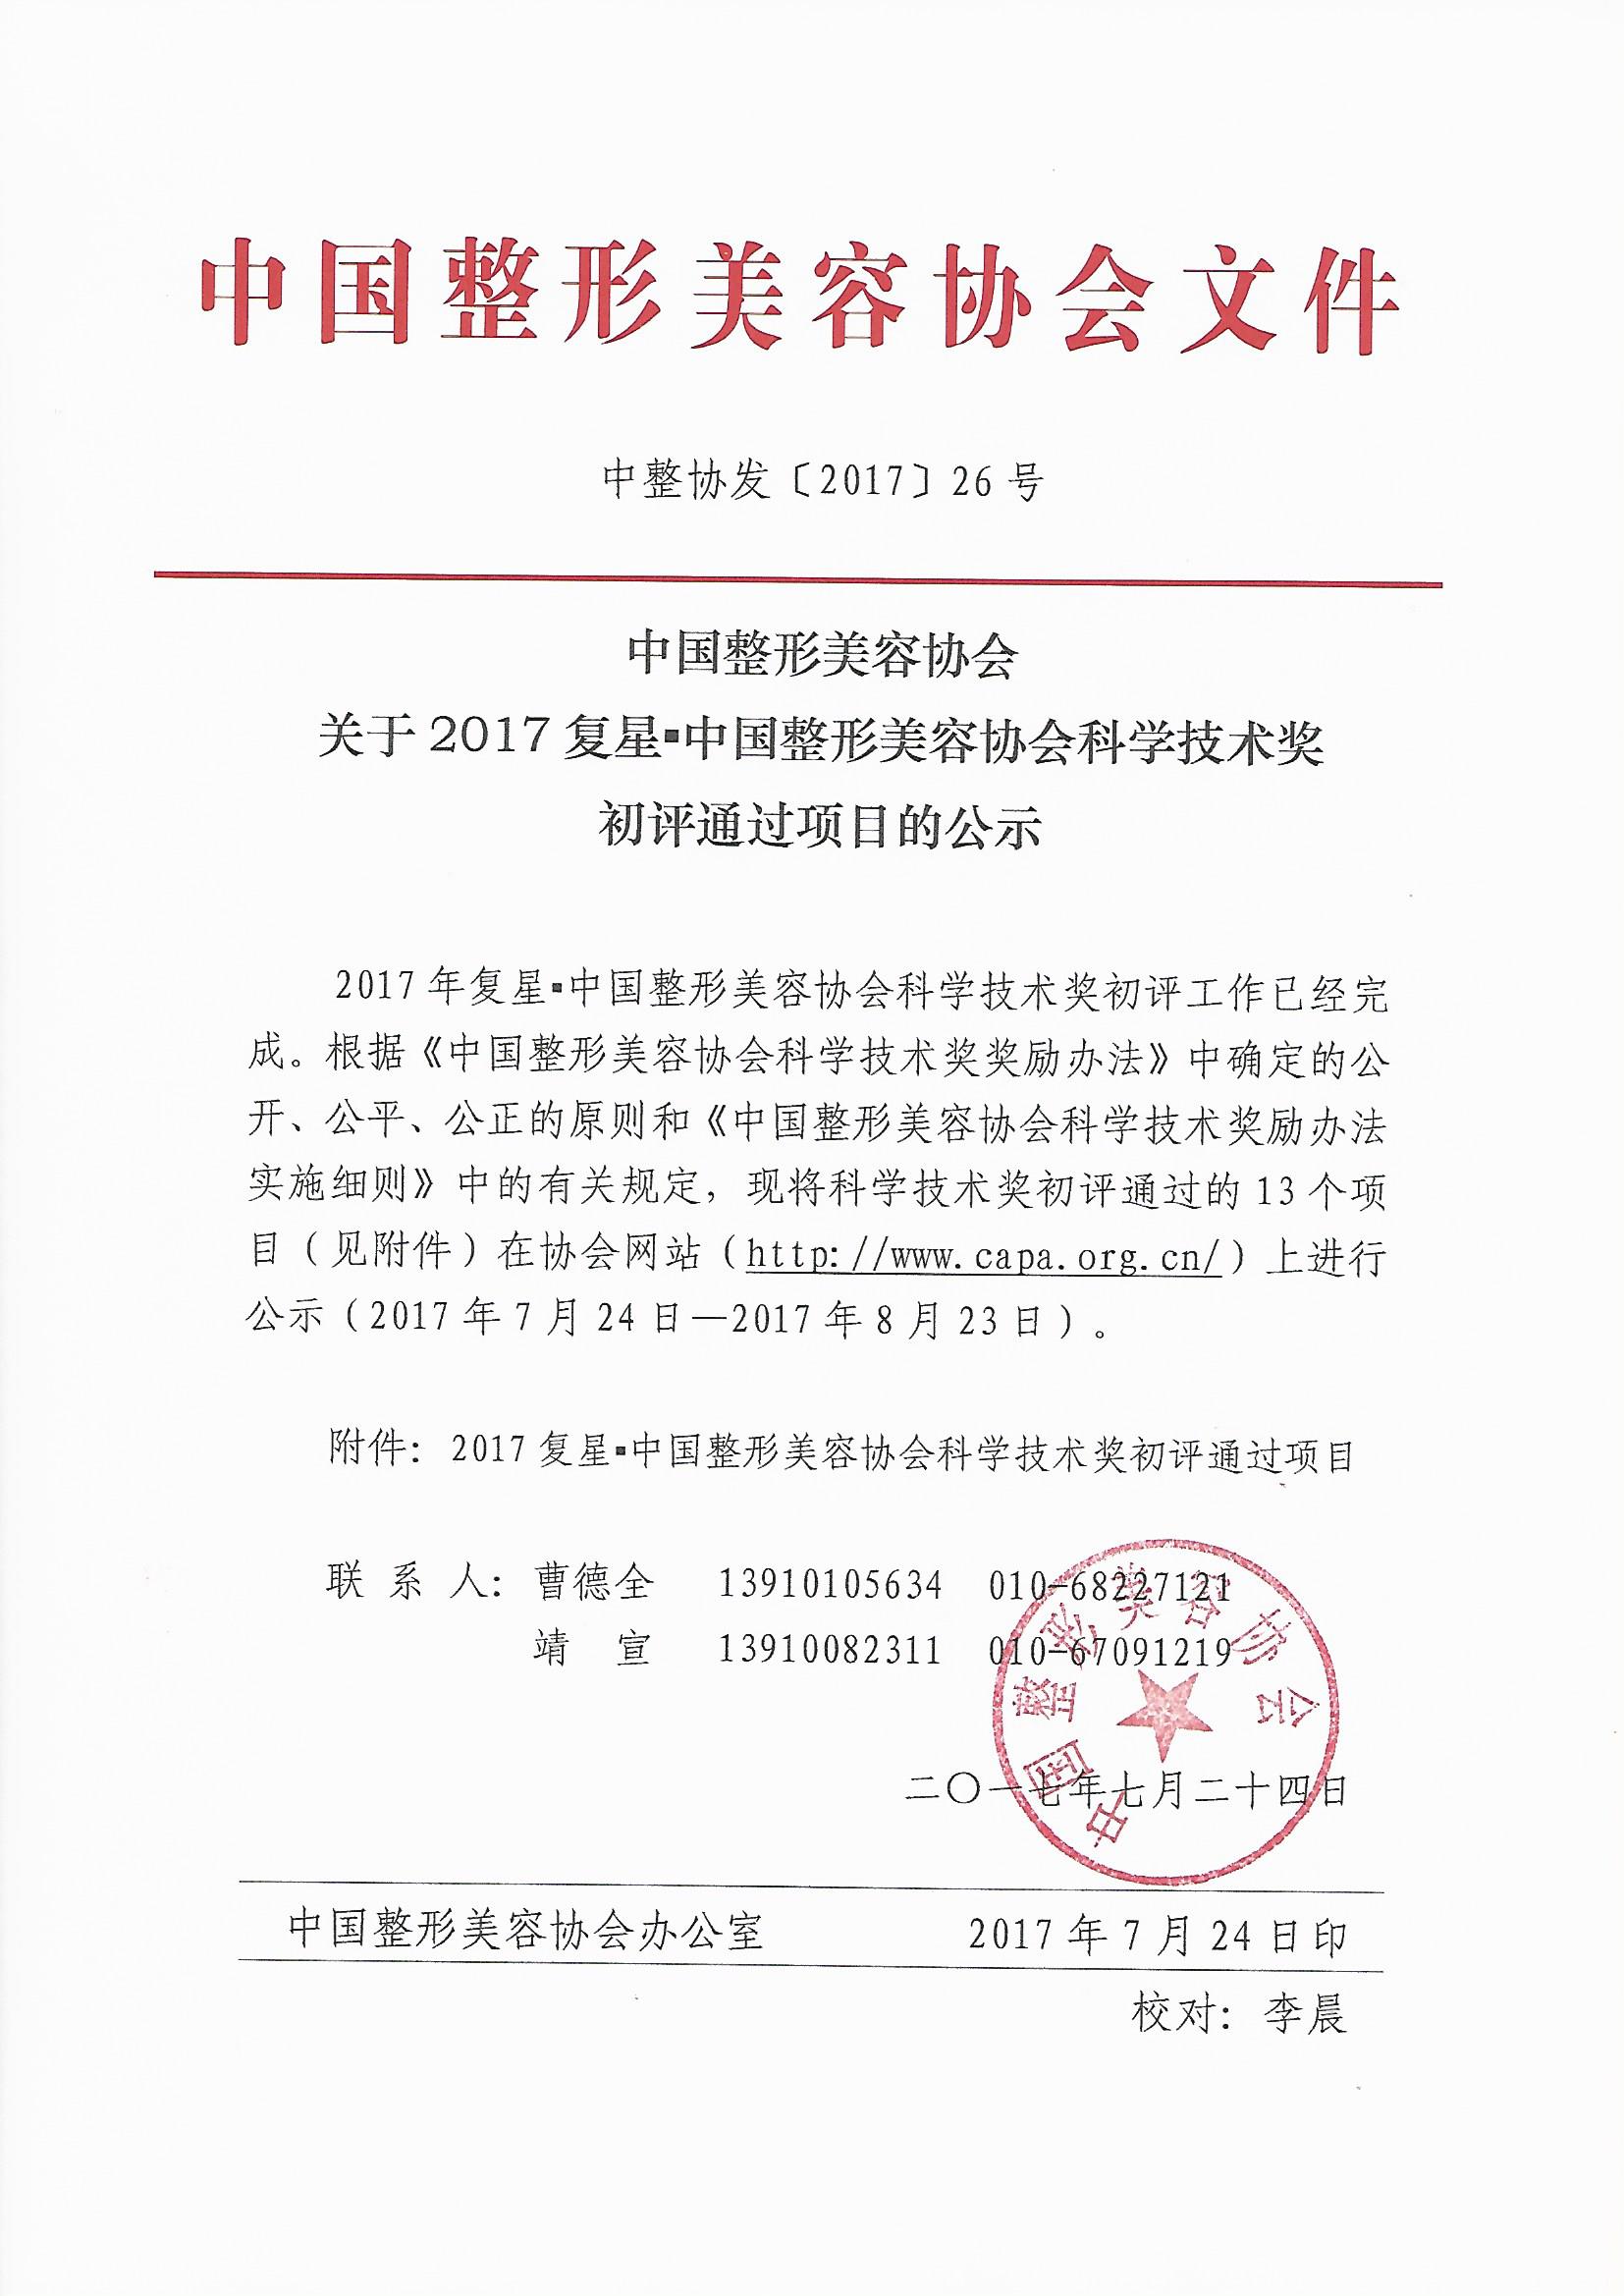 关于2017复星中国整形美容协会科学技术奖初评通过项目的公示 (1)_页面_1.jpg